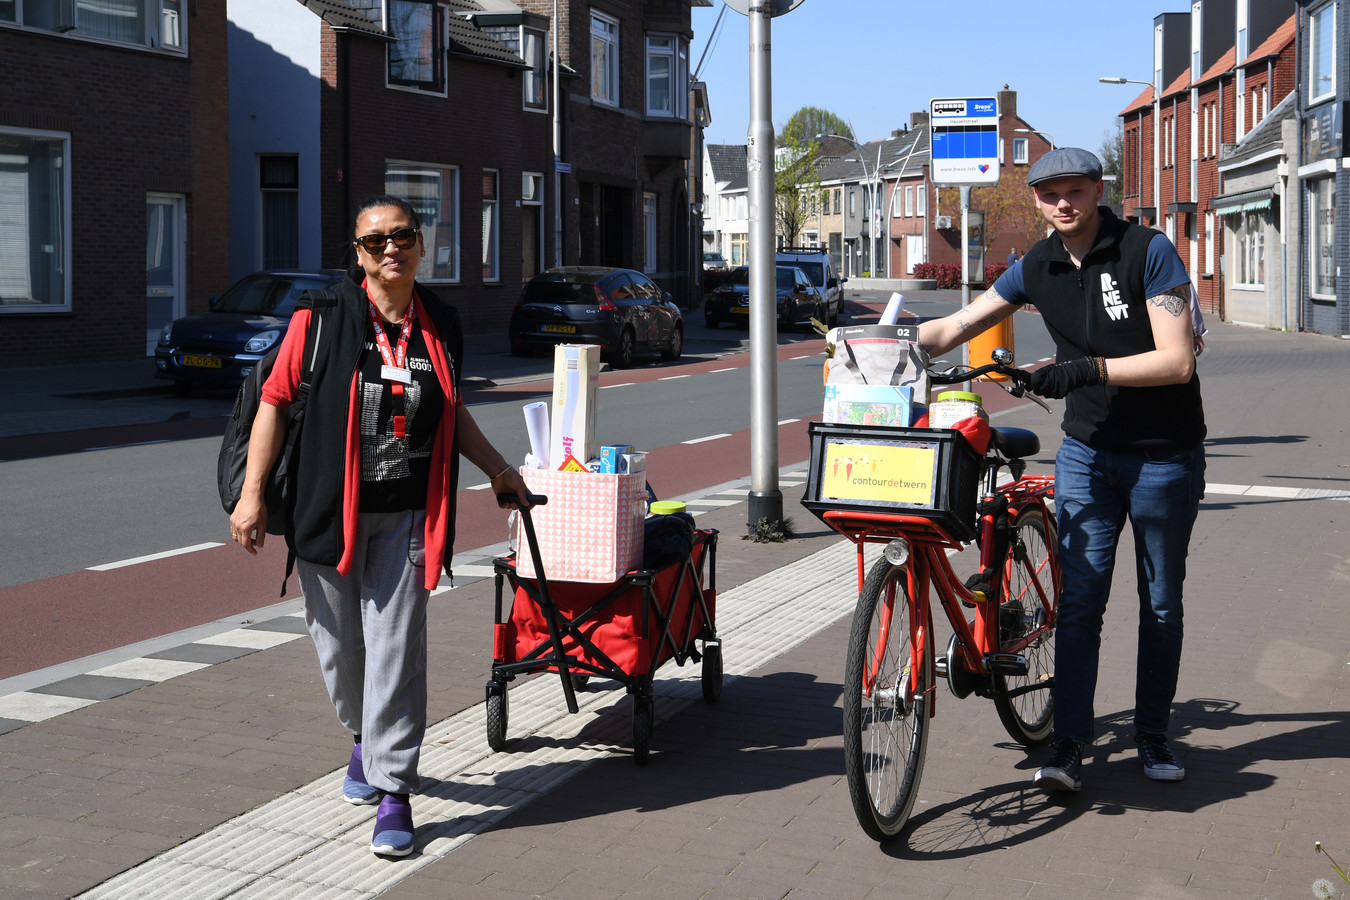 Shirley van den Broek en Olmer Steegh van ContourdeTwern en RNewt met een tassen vol speelgoed op pad in Tilburg Oud-Noord.